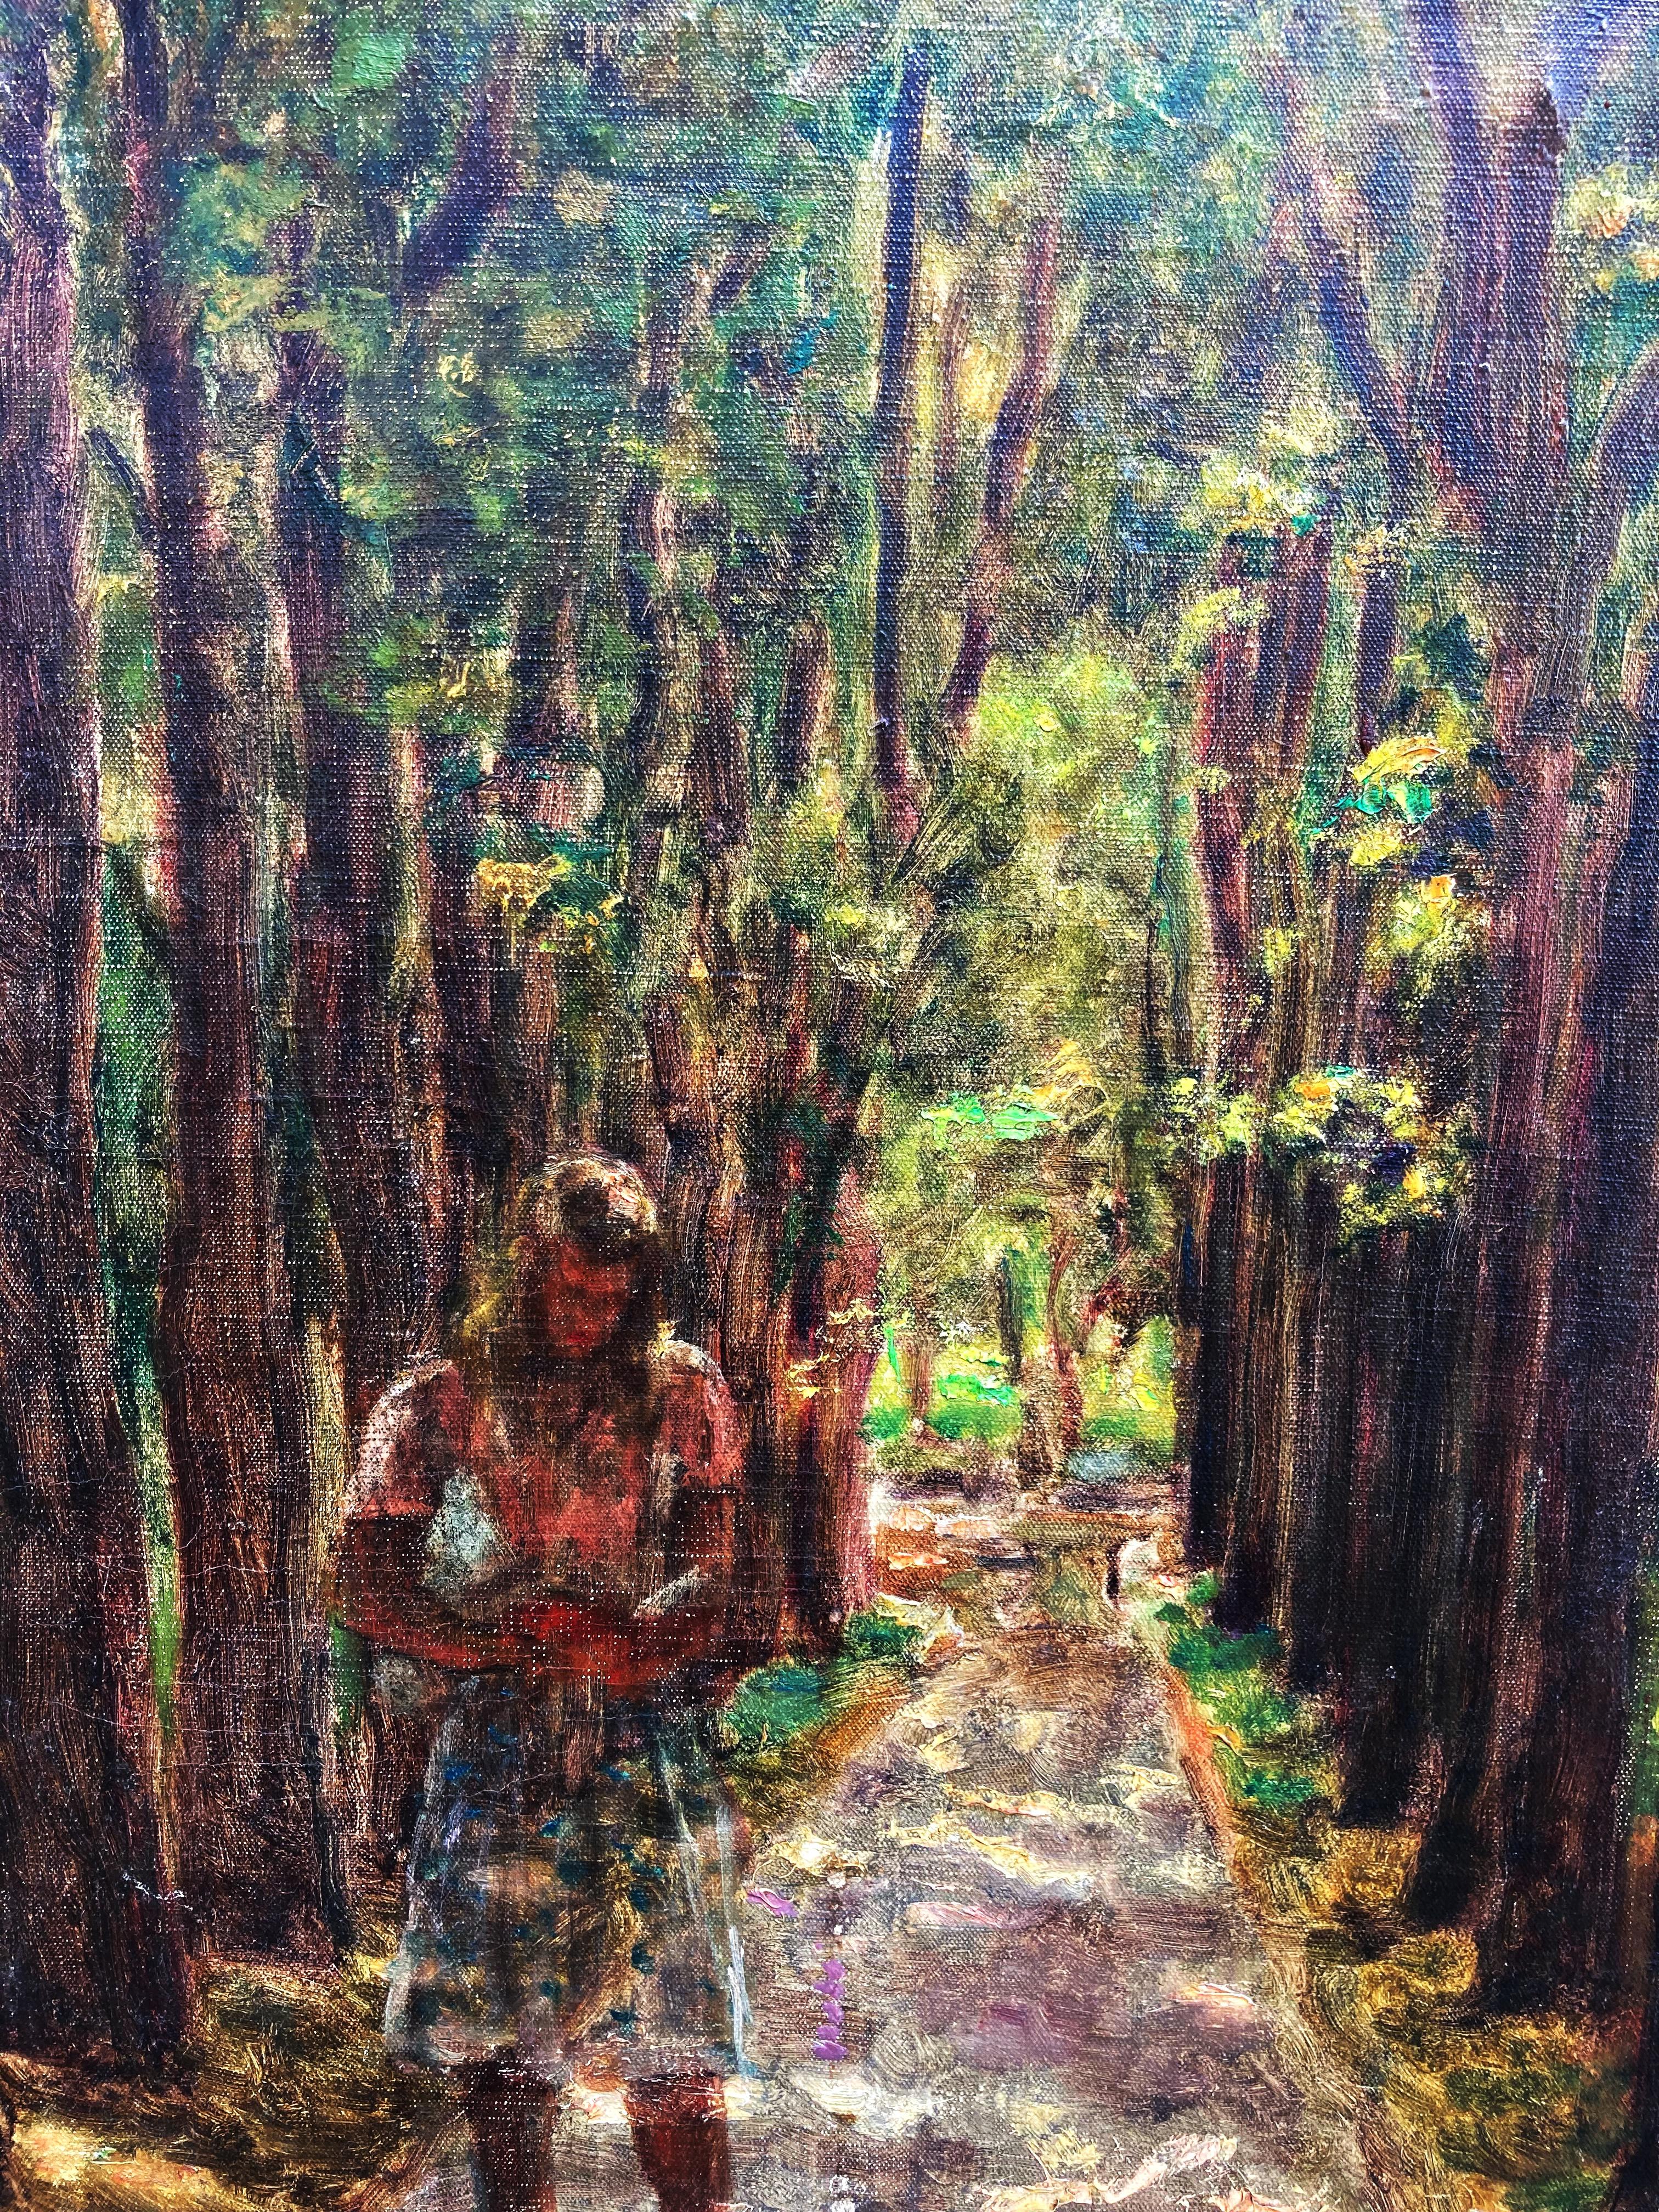 A Path Through the Woods (Impressionistisches Ölgemälde auf Leinwand) – Painting von Unknown